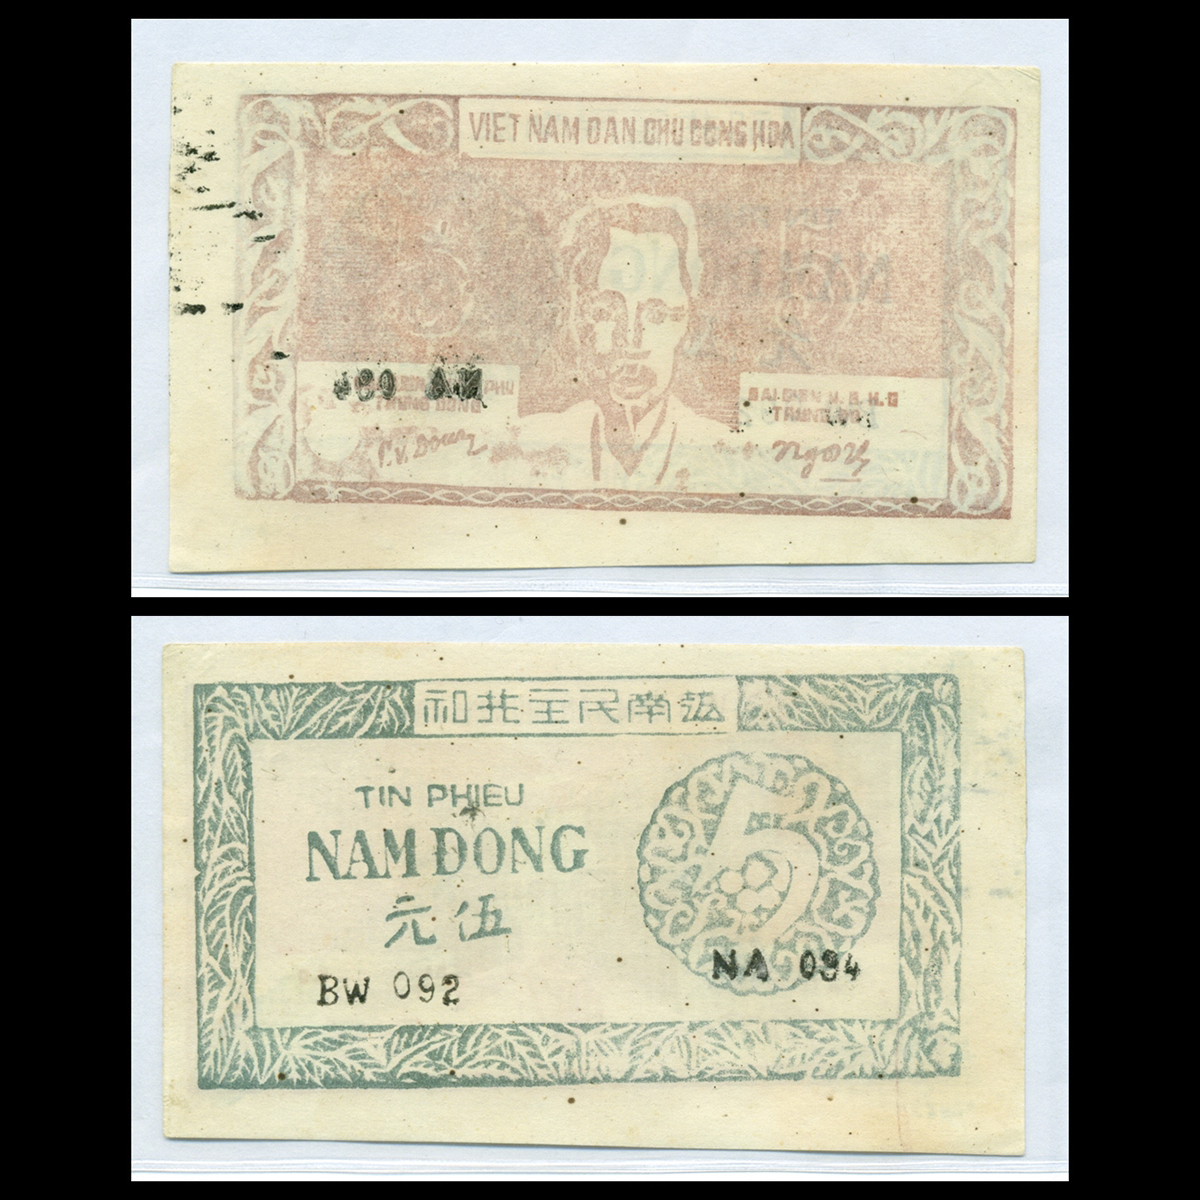 5 đồng Tín phiếu Việt Nam Dân Chủ Cộng Hòa